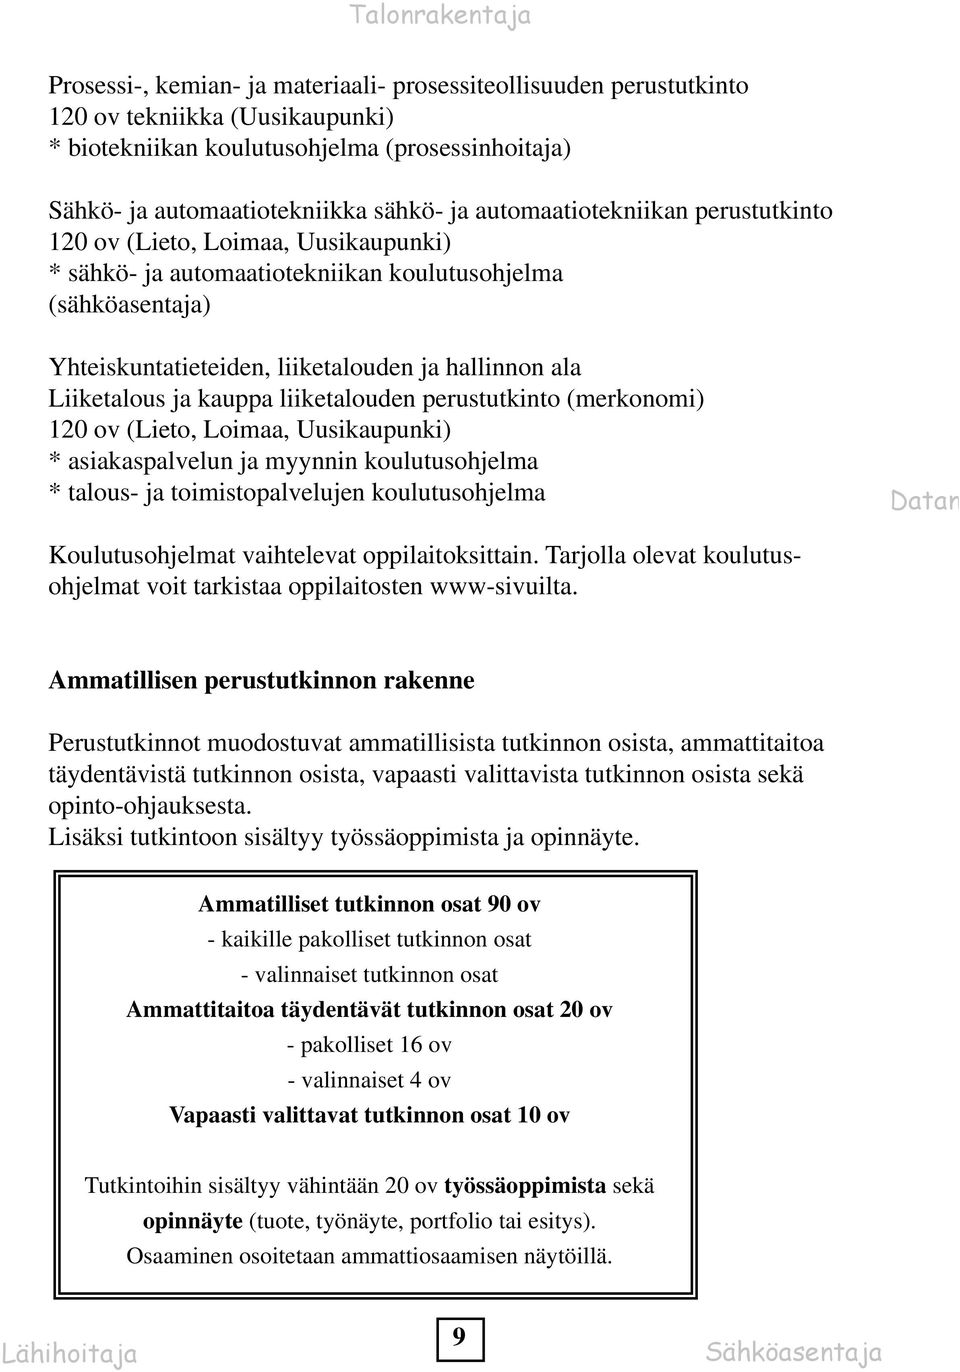 Liiketalous ja kauppa liiketalouden perustutkinto (merkonomi) 120 ov (Lieto, Loimaa, Uusikaupunki) * asiakaspalvelun ja myynnin koulutusohjelma * talous- ja toimistopalvelujen koulutusohjelma Datan